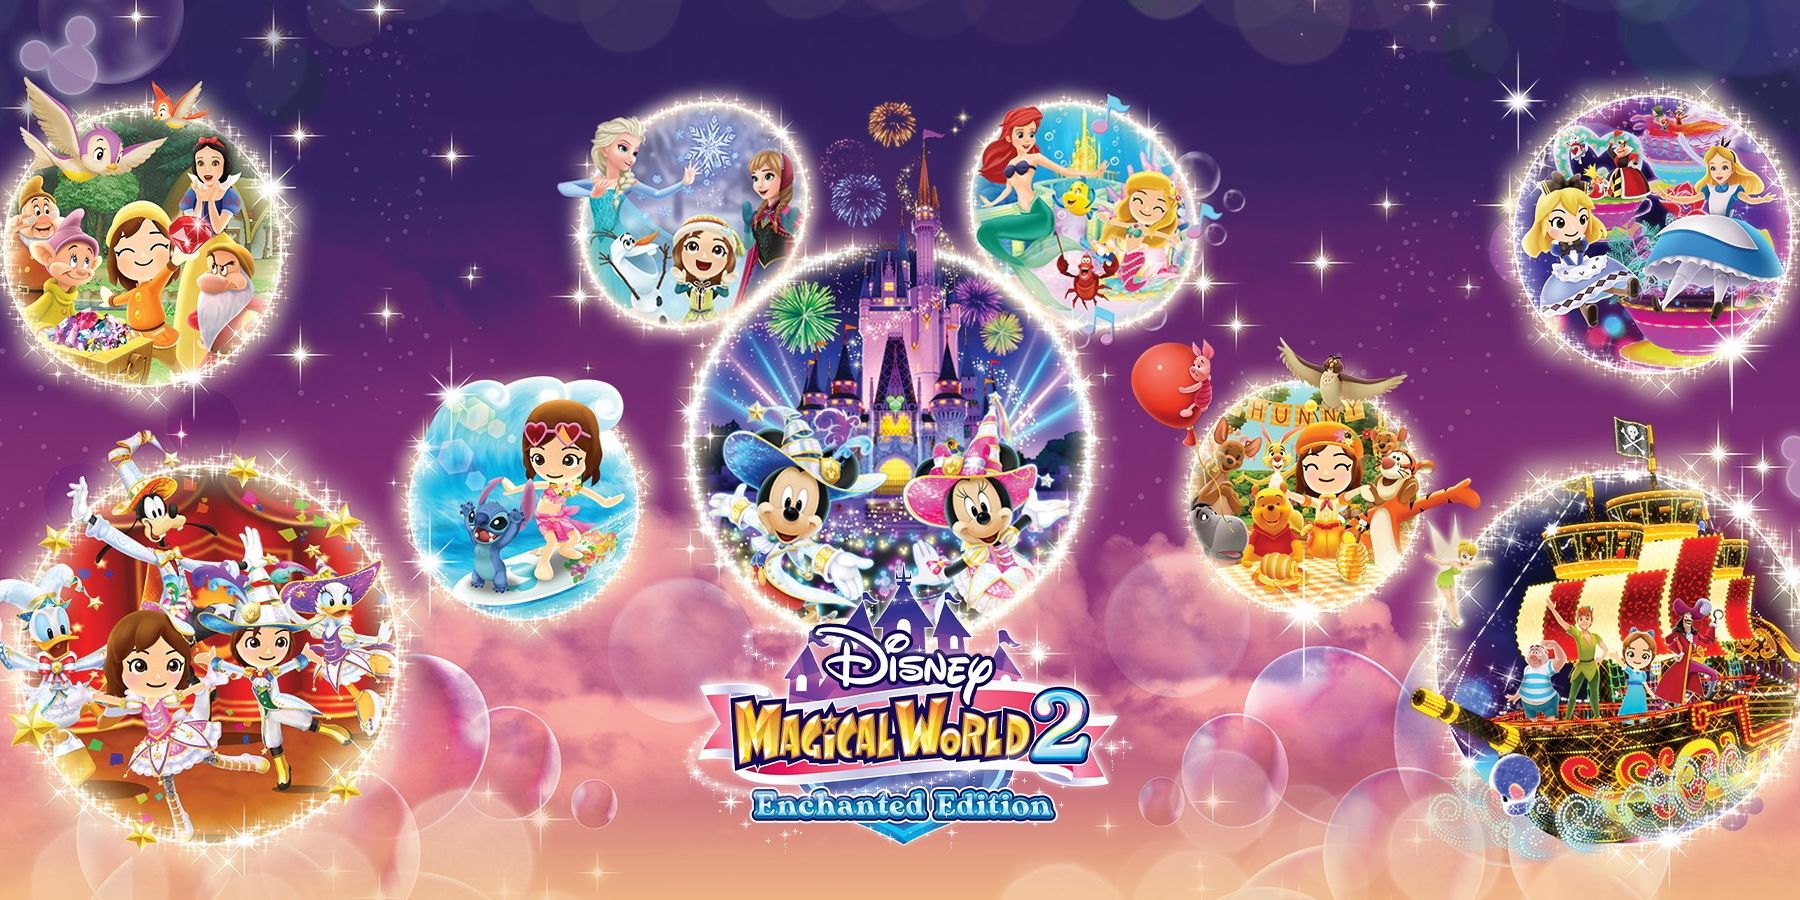 Disney Magical World 2: Enchanted Edition, которое выключится в этом году